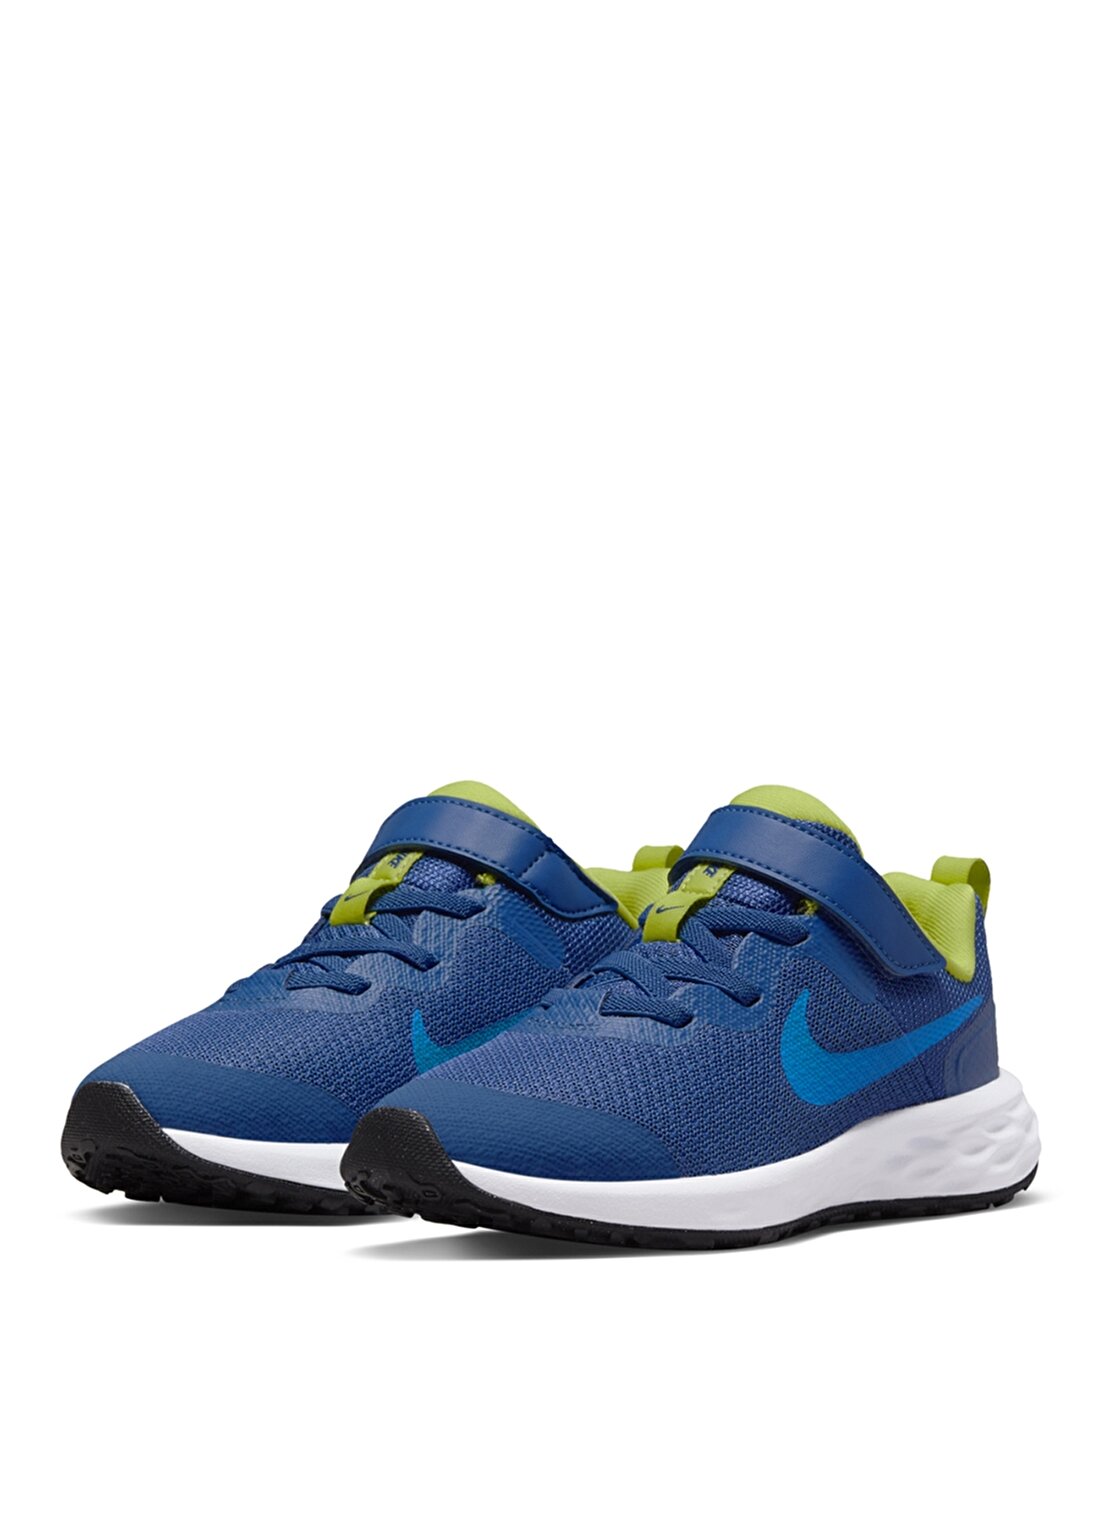 Nike Mavi Erkek Çocuk Yürüyüş Ayakkabısı DD1095-401NIKEREVOLUTION6NN(PSV)